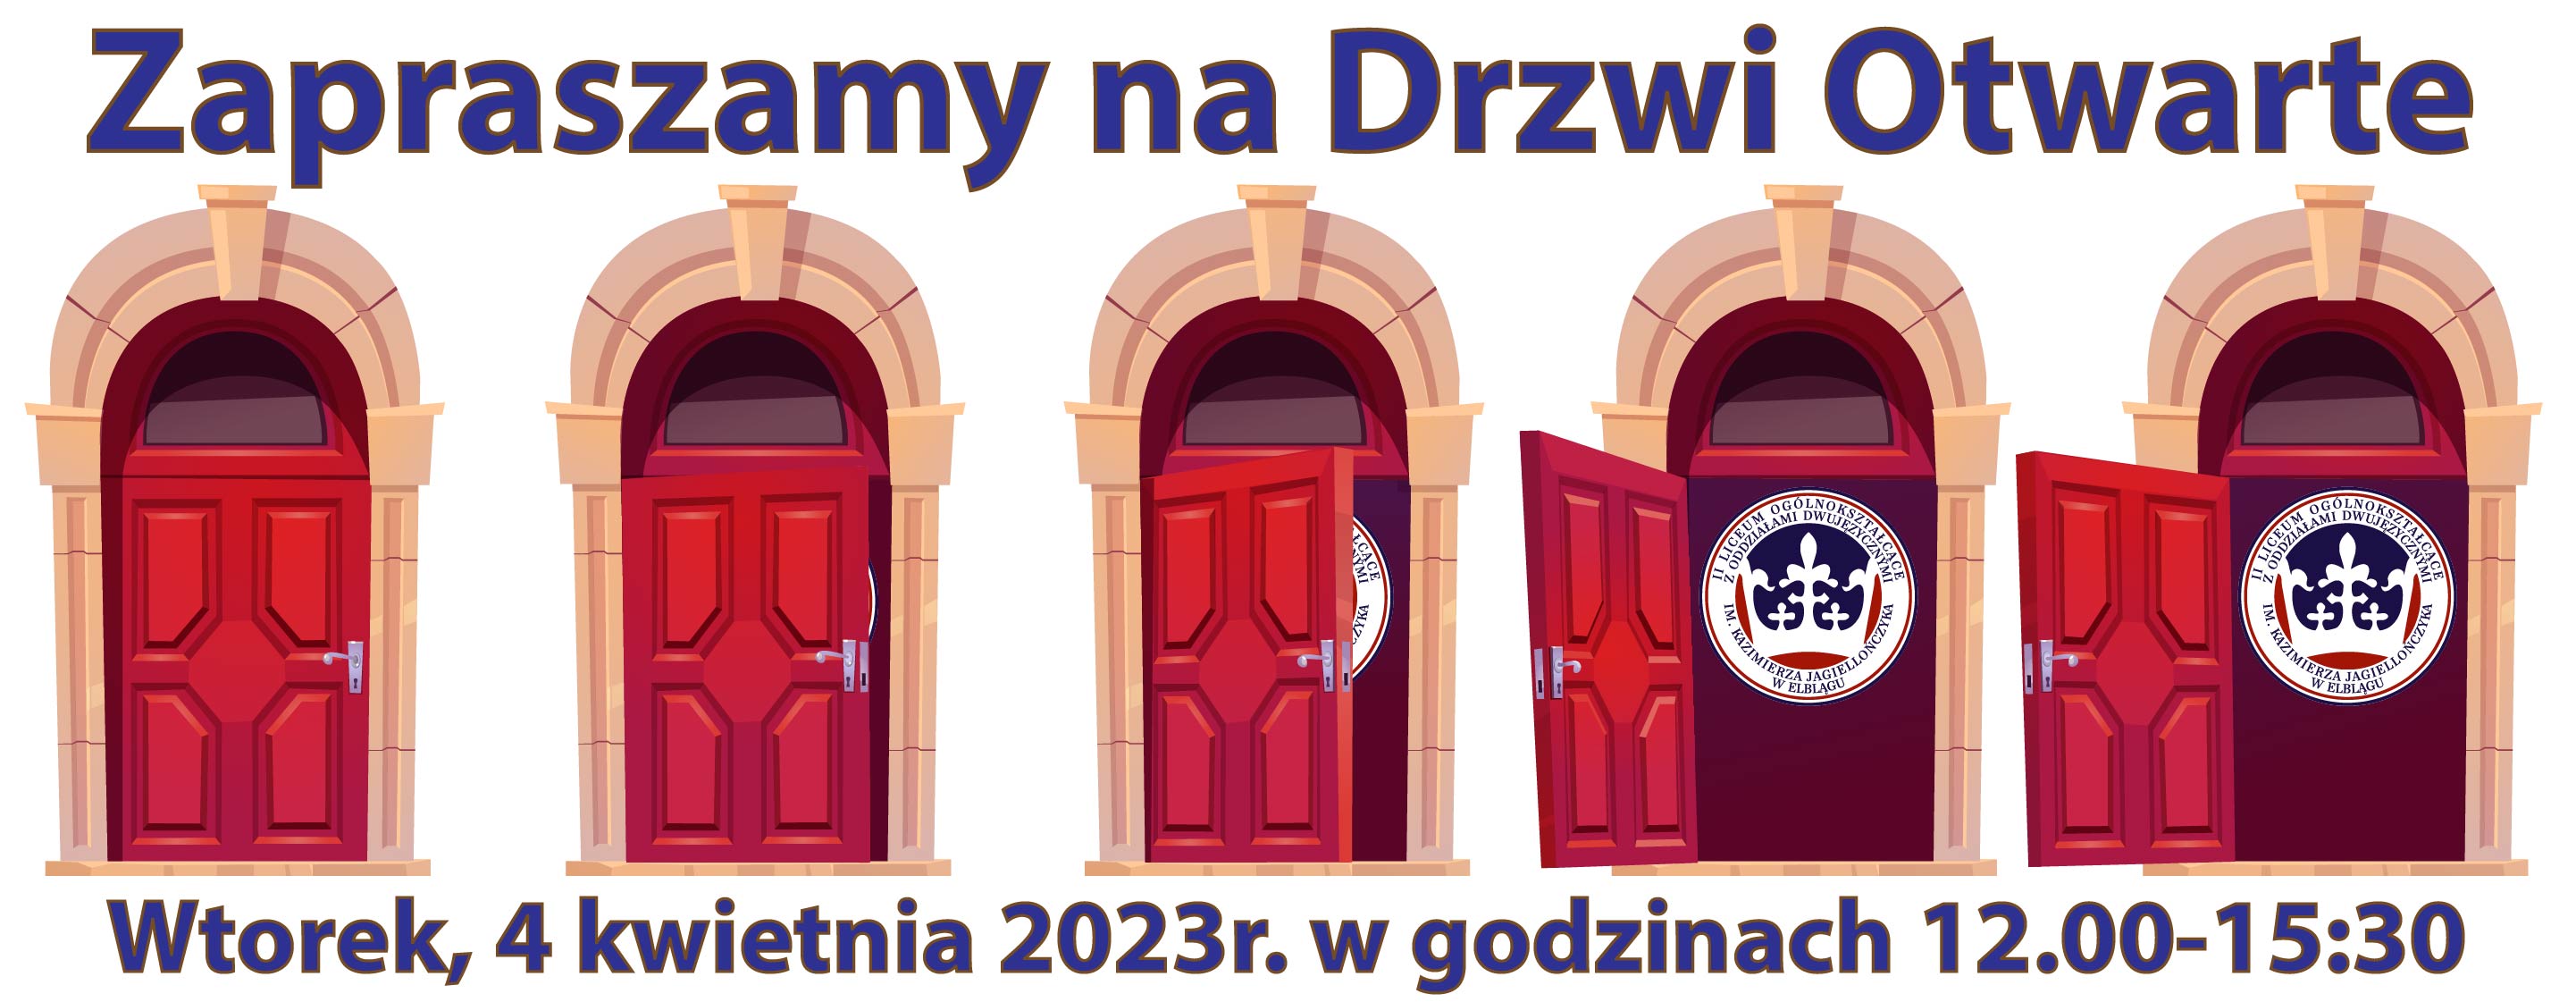 2022 Drzwi Otwarte